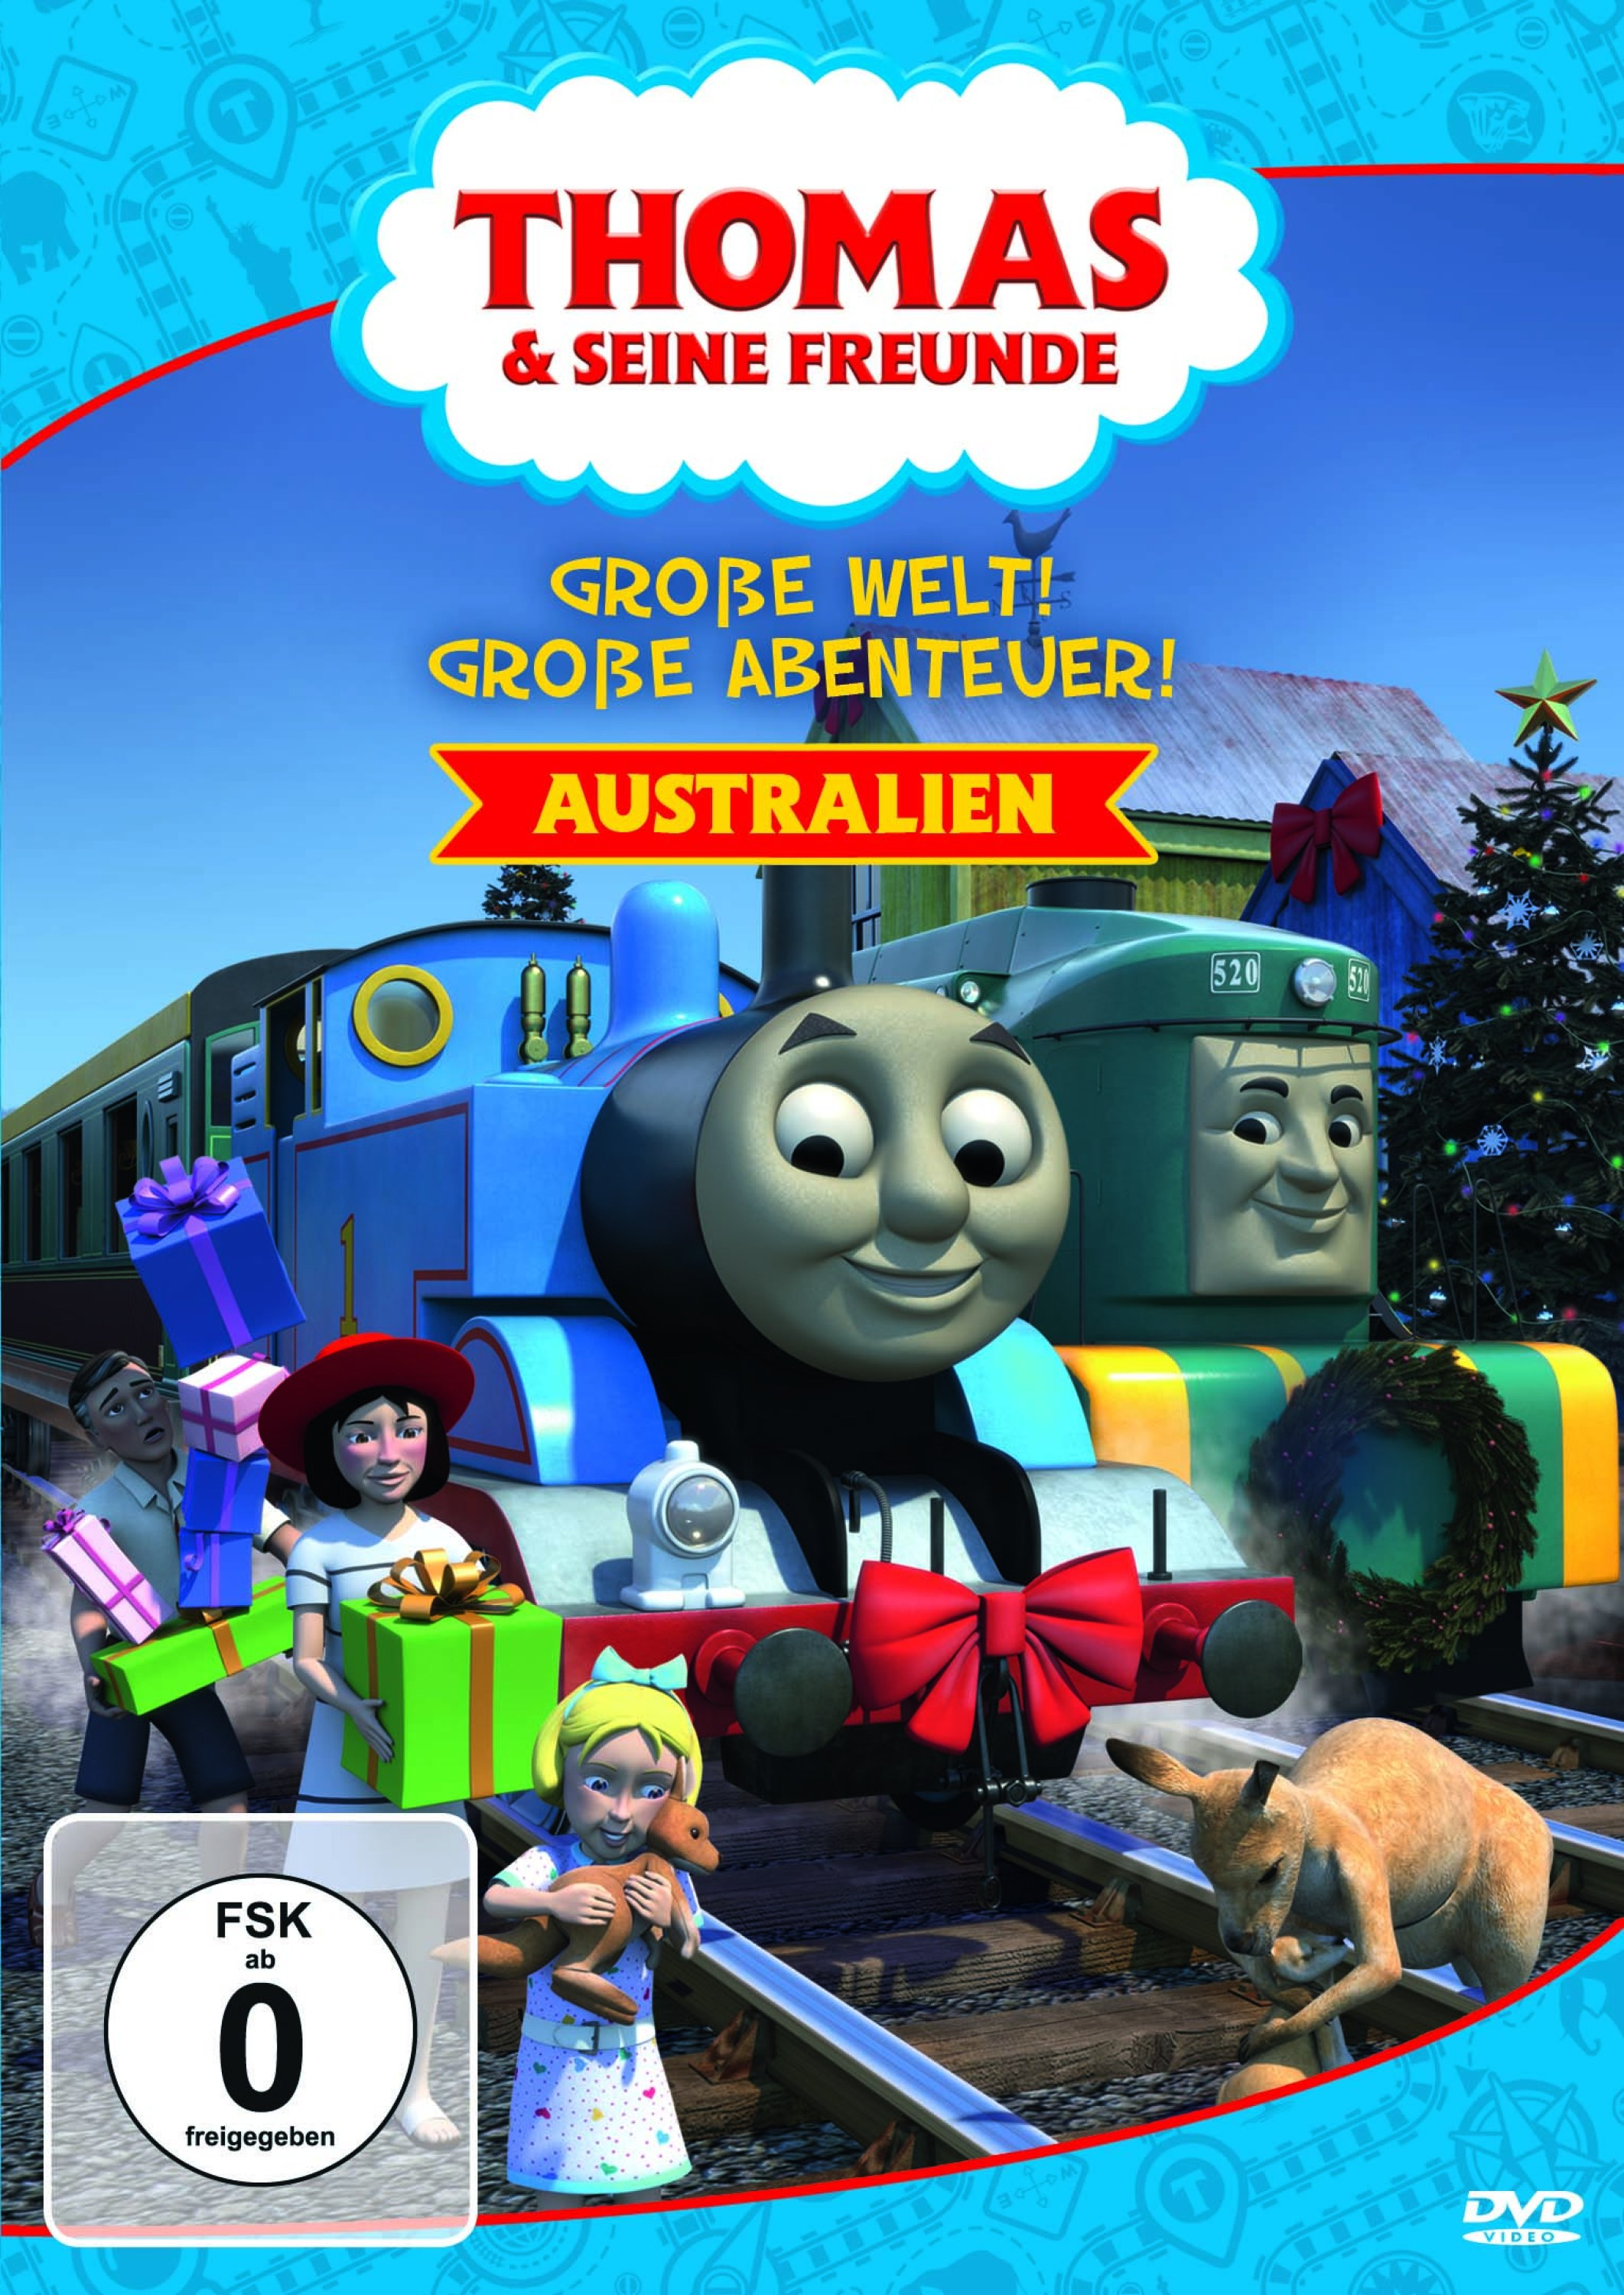 - AUSTRALIEN GROSSE ABENTEUER! Thomas 2 WELT! Freunde Seine & GROSSE DVD